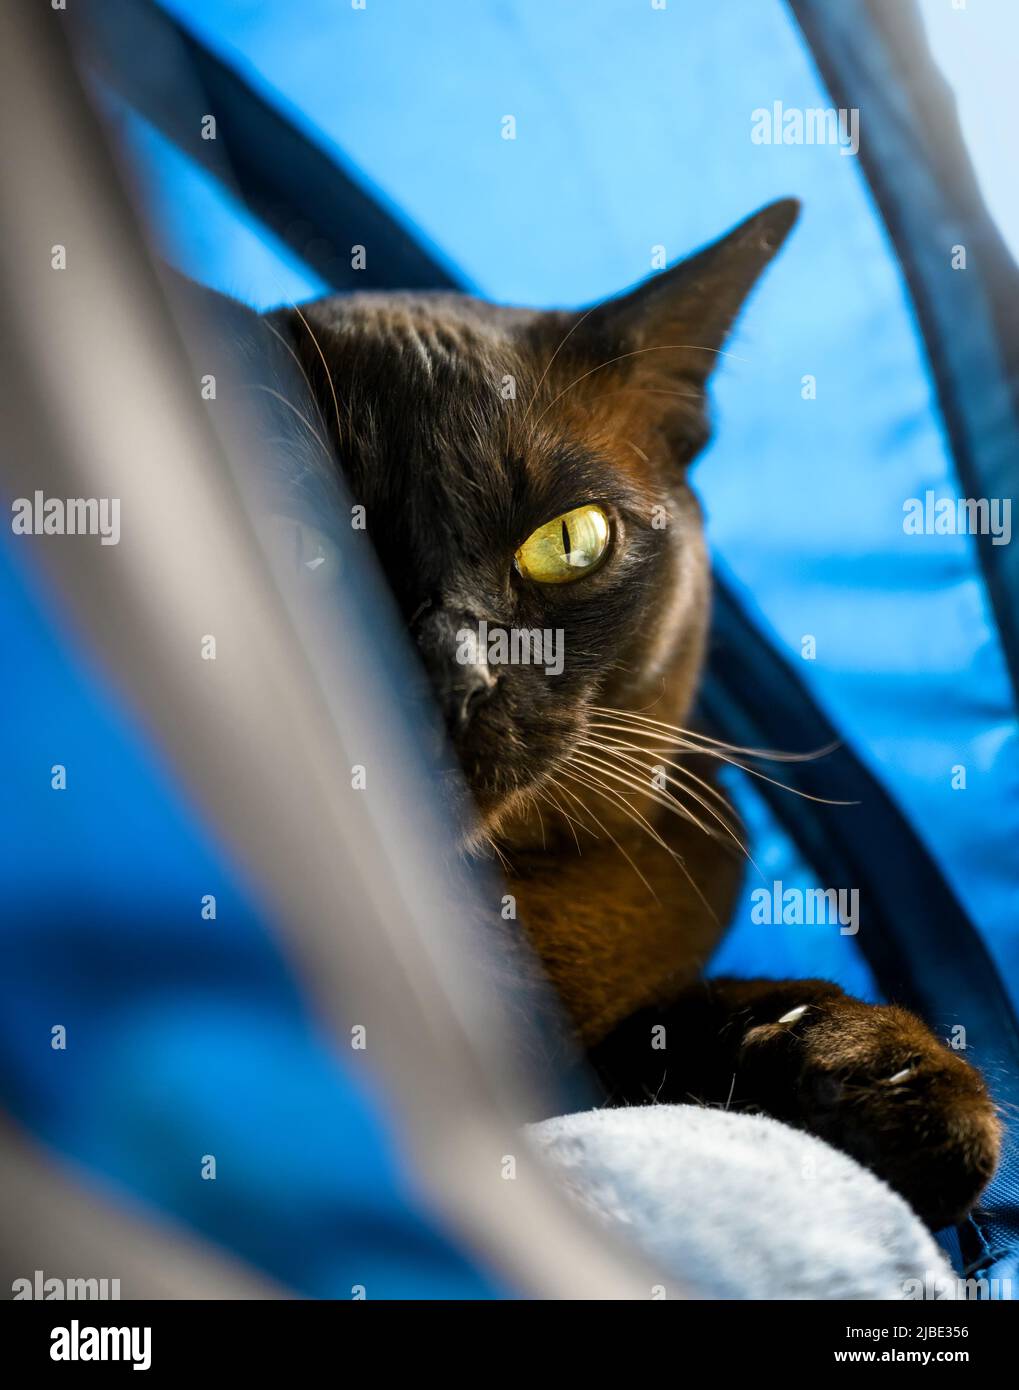 Gatto birmano che sbuccia dalla casa del gatto, animale domestico birmano marrone scuro che guarda la macchina fotografica al coperto. Gatto europeo birmano con pelliccia di cioccolato a casa. dom. Grumpy Foto Stock